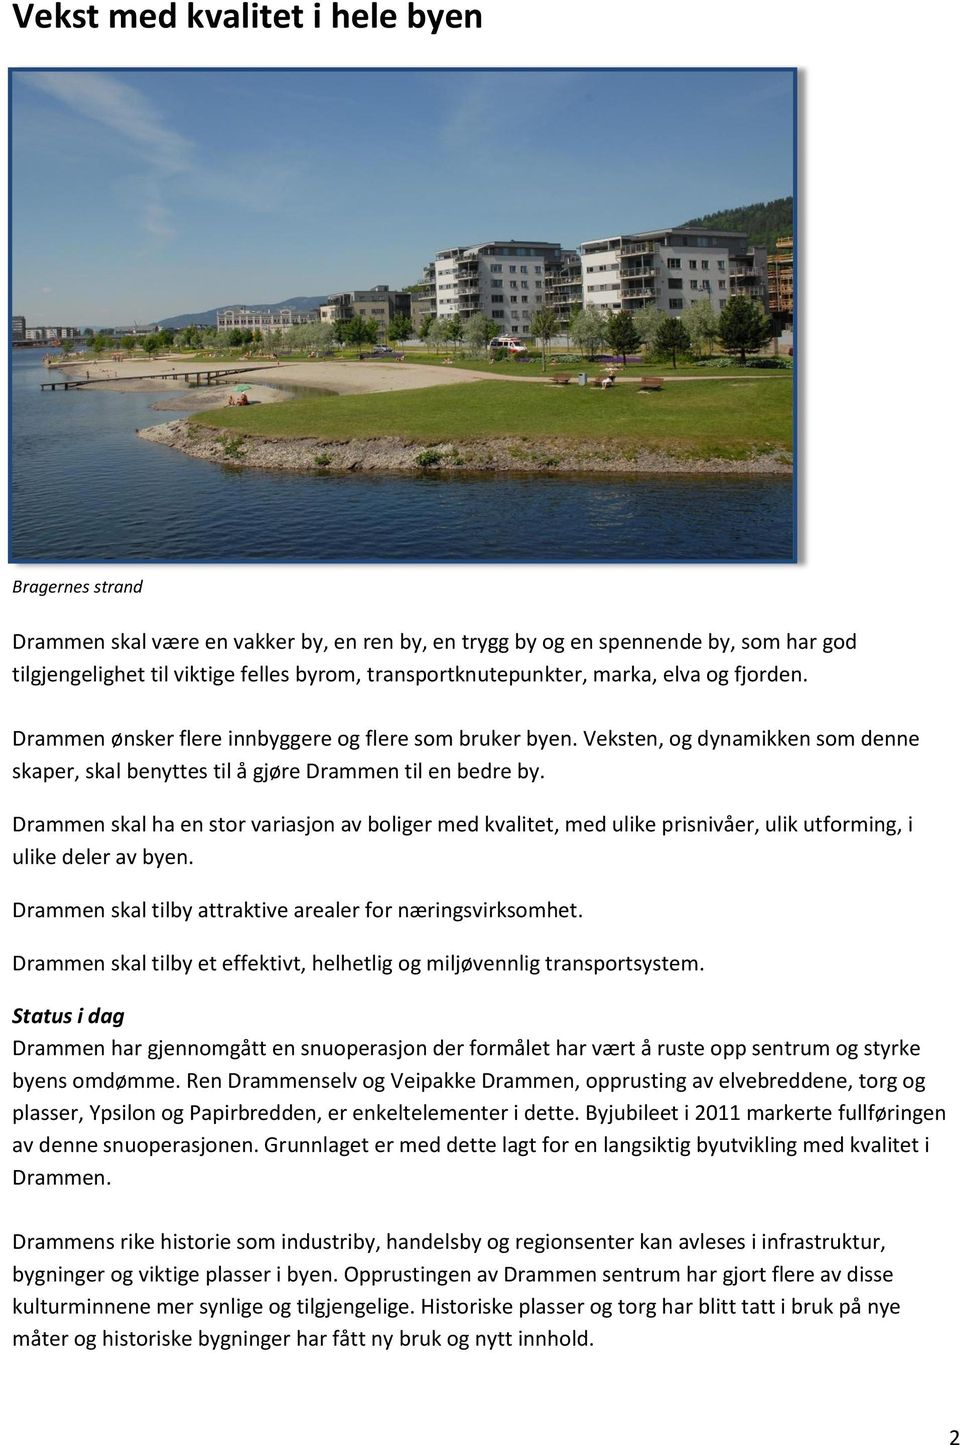 Drammen skal ha en stor variasjon av boliger med kvalitet, med ulike prisnivåer, ulik utforming, i ulike deler av byen. Drammen skal tilby attraktive arealer for næringsvirksomhet.